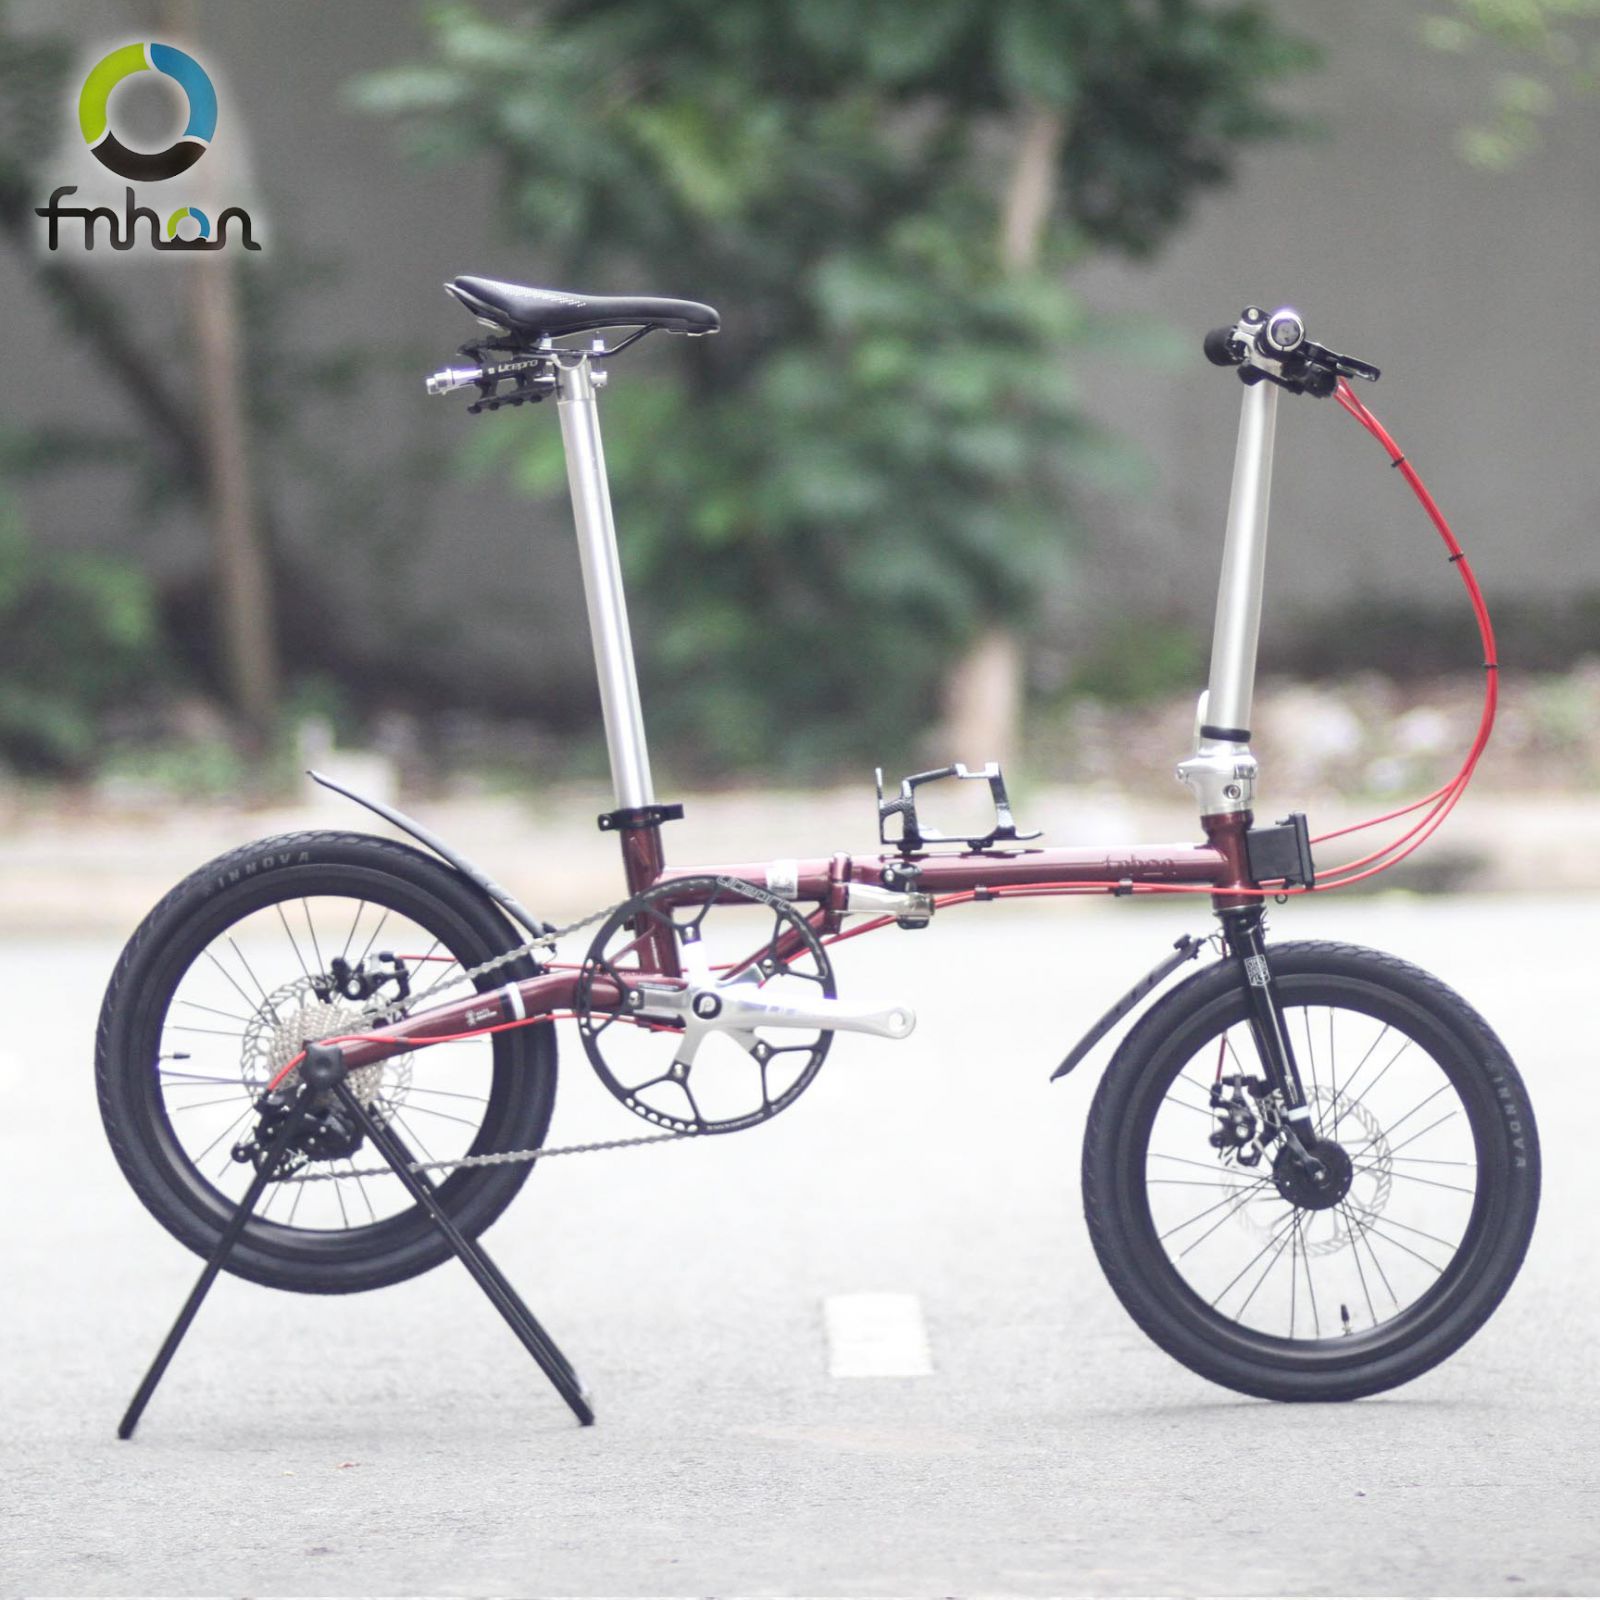 Mi Hino T1 xe đạp điện chạy đc120km cho mỗi lần sạc giá 10tr500  Công  nghệ  Xiaomi Community  Xiaomi